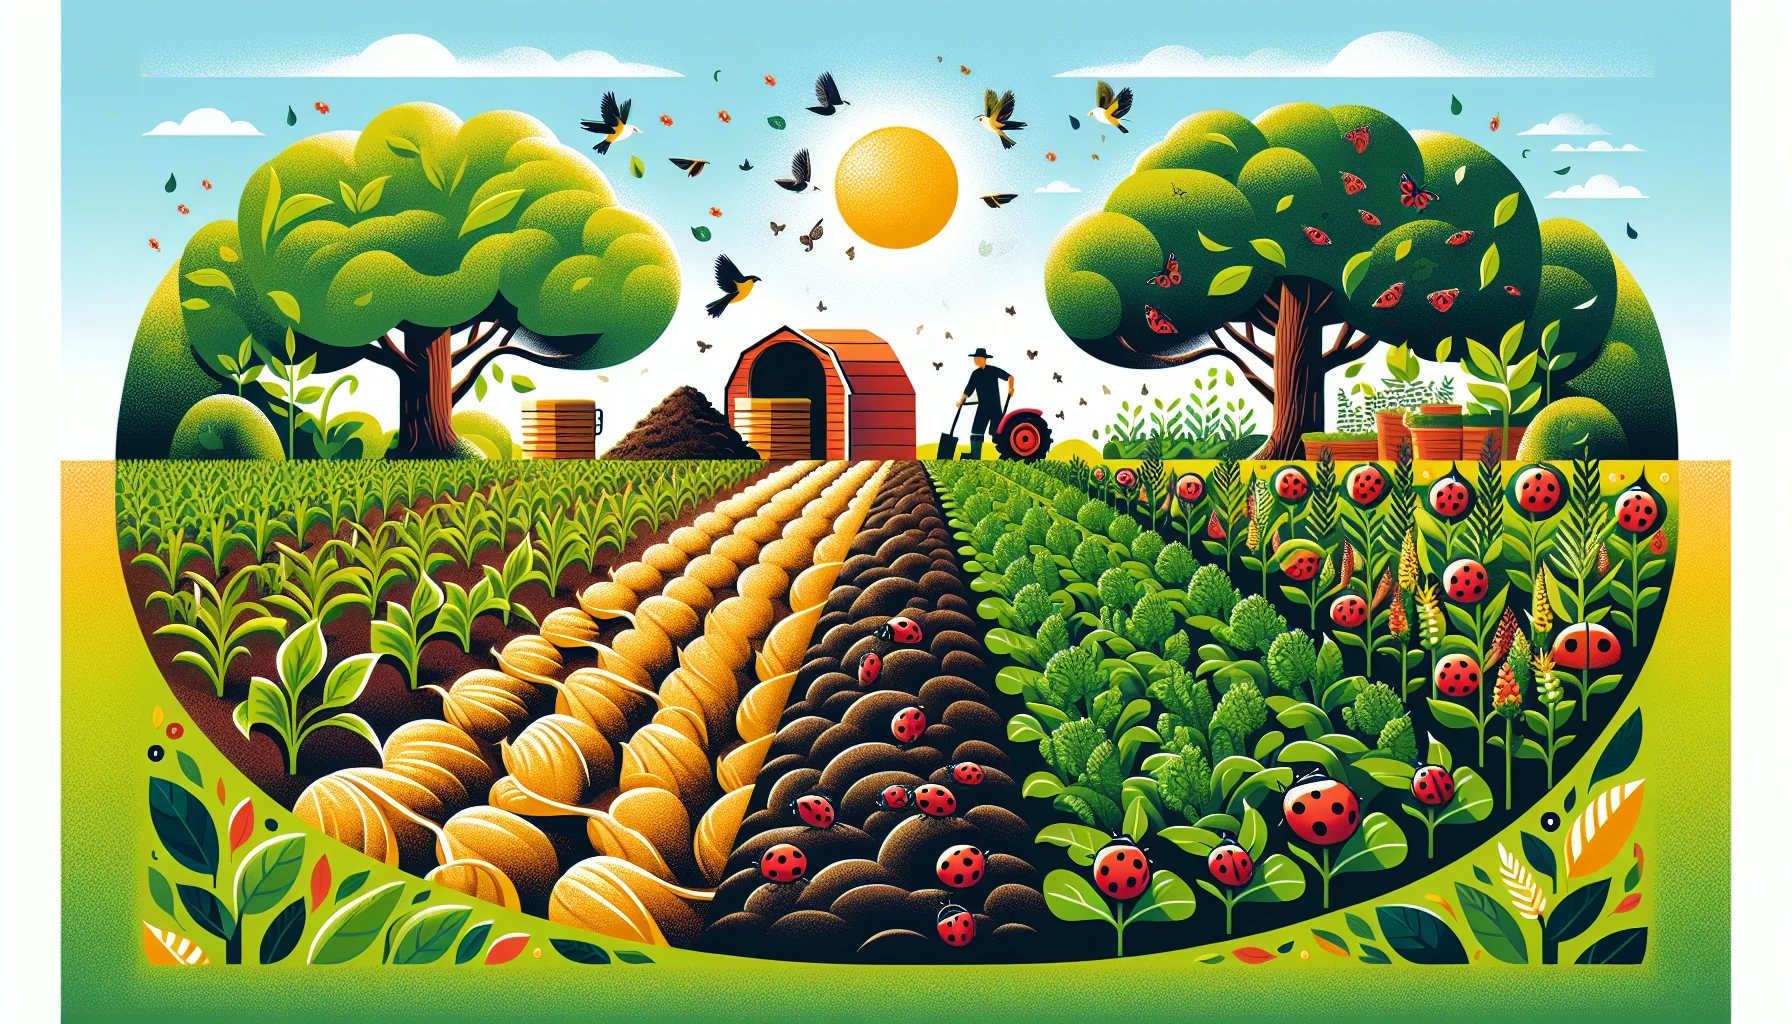 Organic farming practices